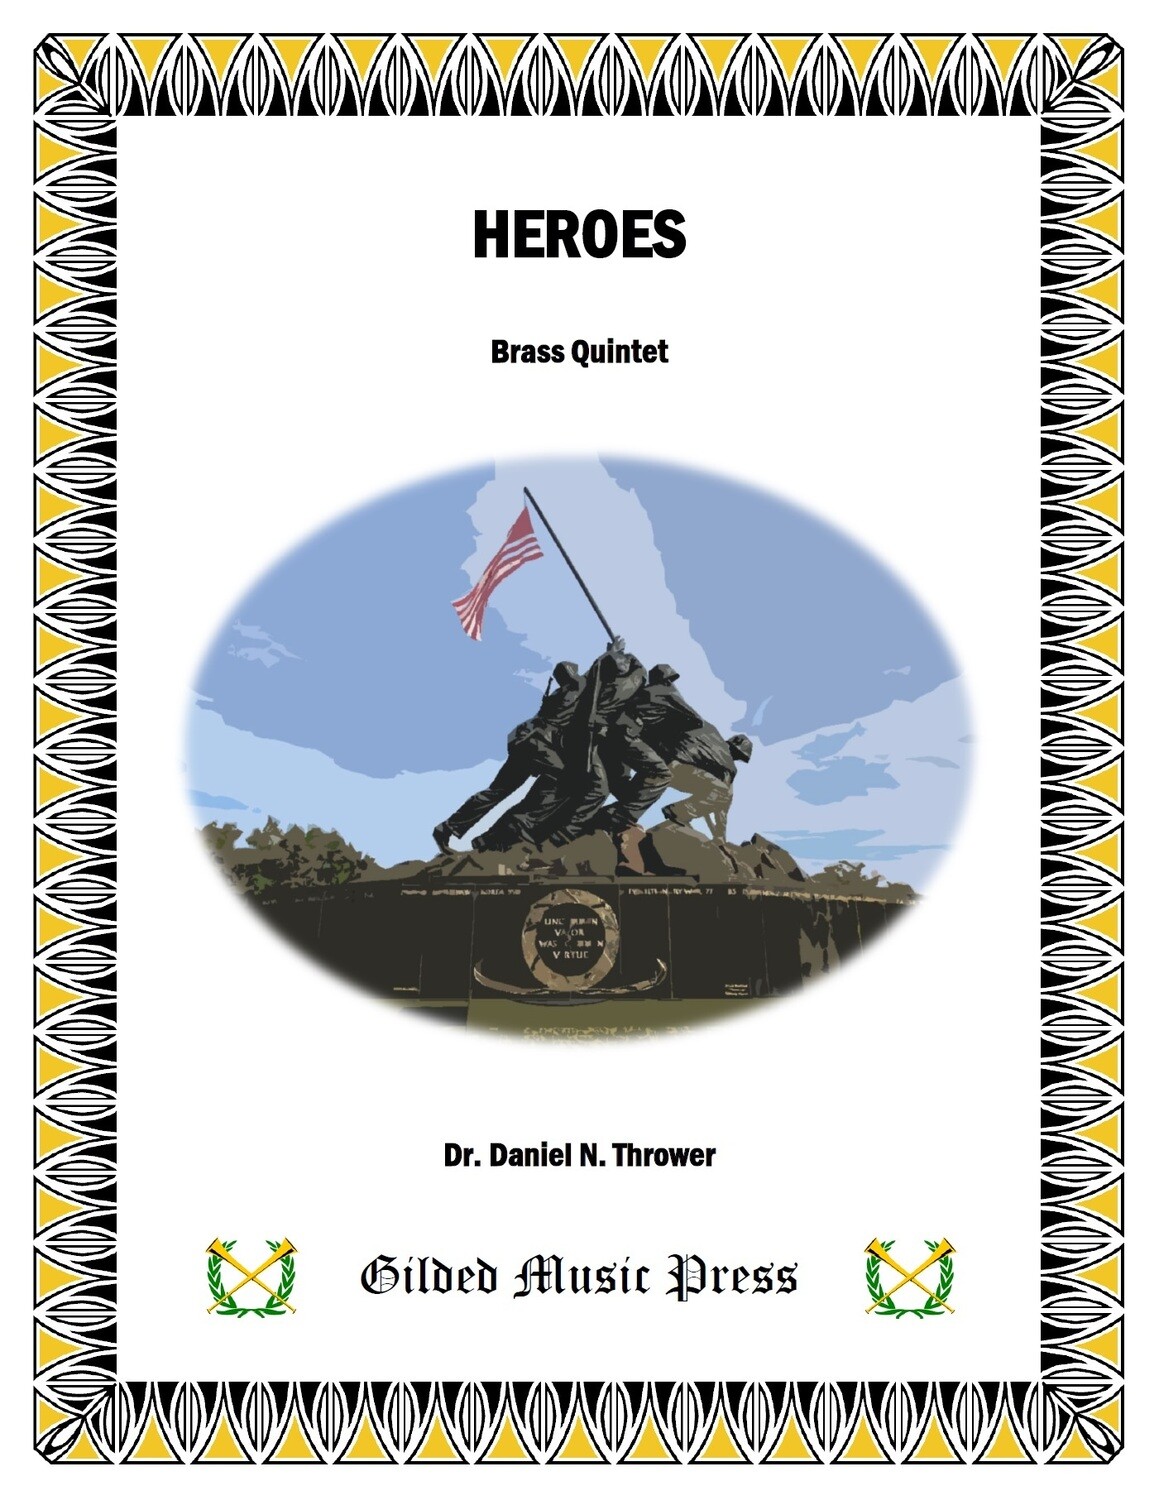 GMP 3050: Heroes (Brass Quintet), Dr. Daniel Thrower